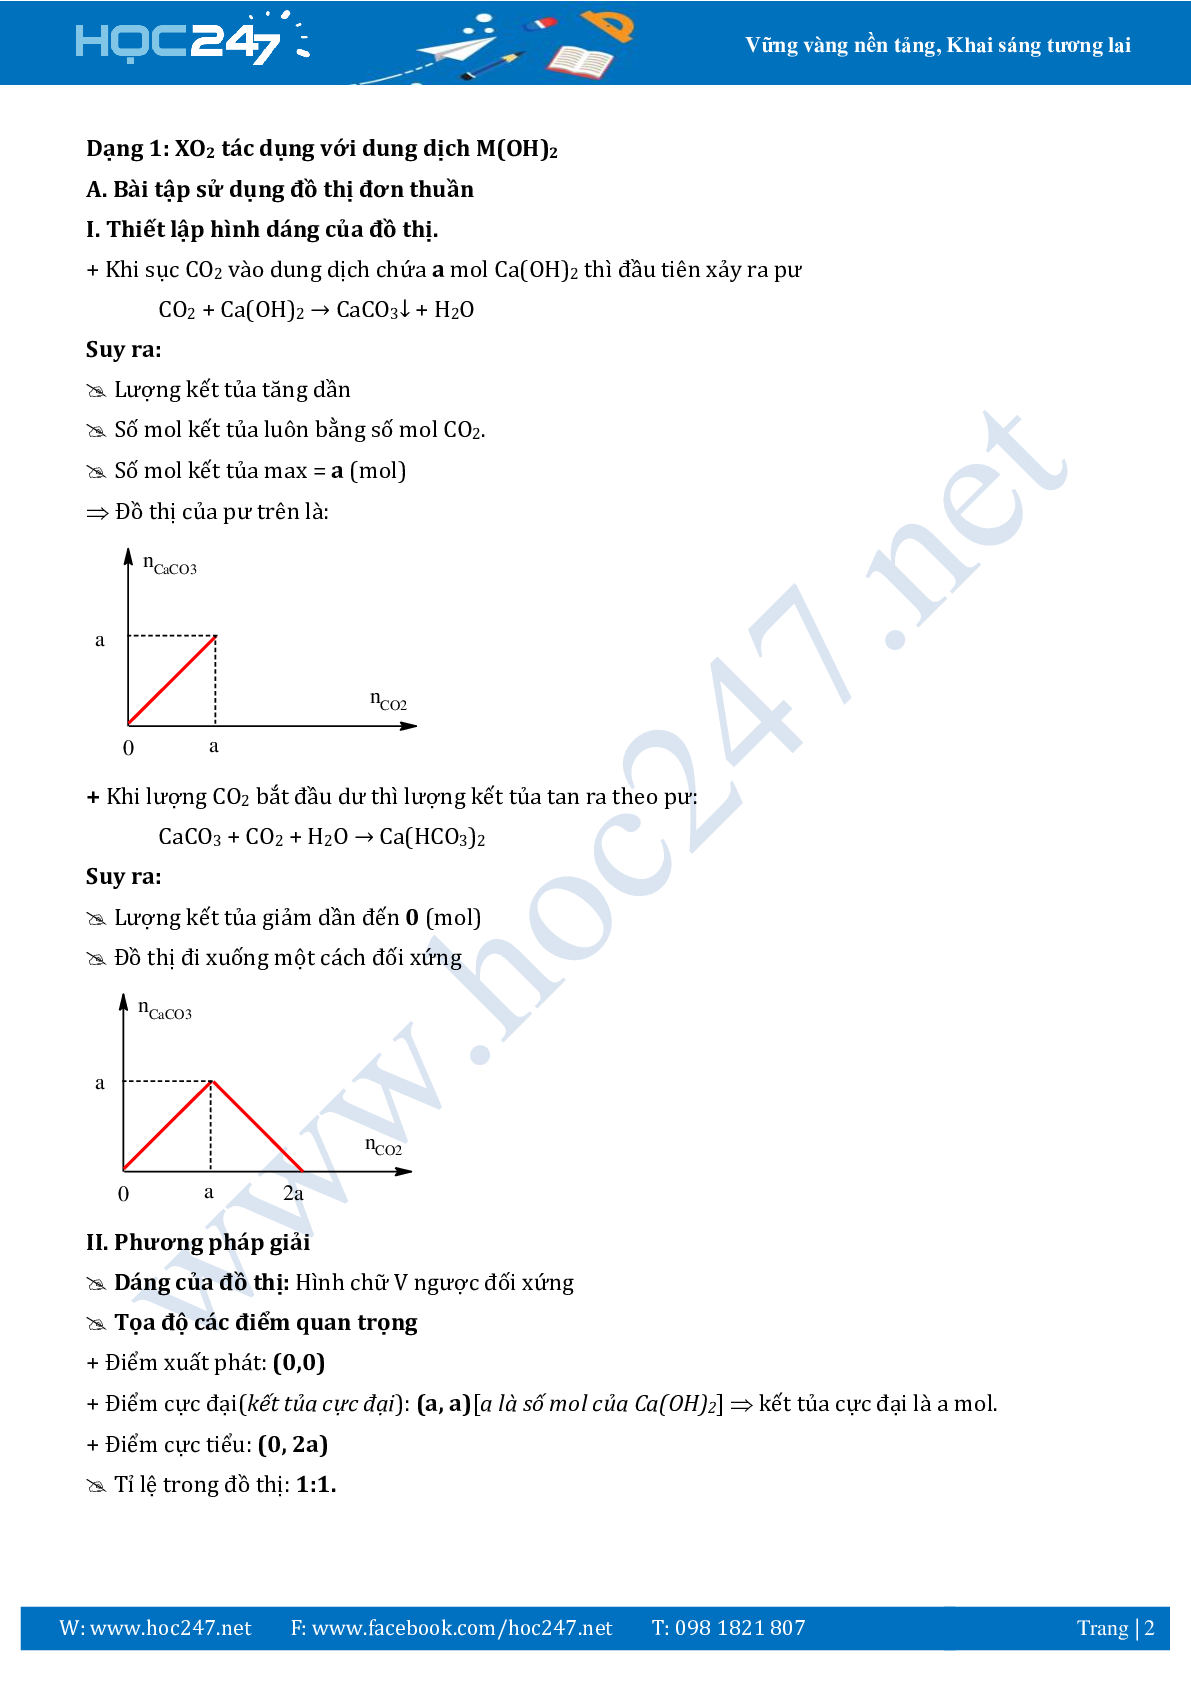 Chuyên đề sử dụng phương pháp đồ thị ôn thi THPTQG môn Hóa học (trang 2)